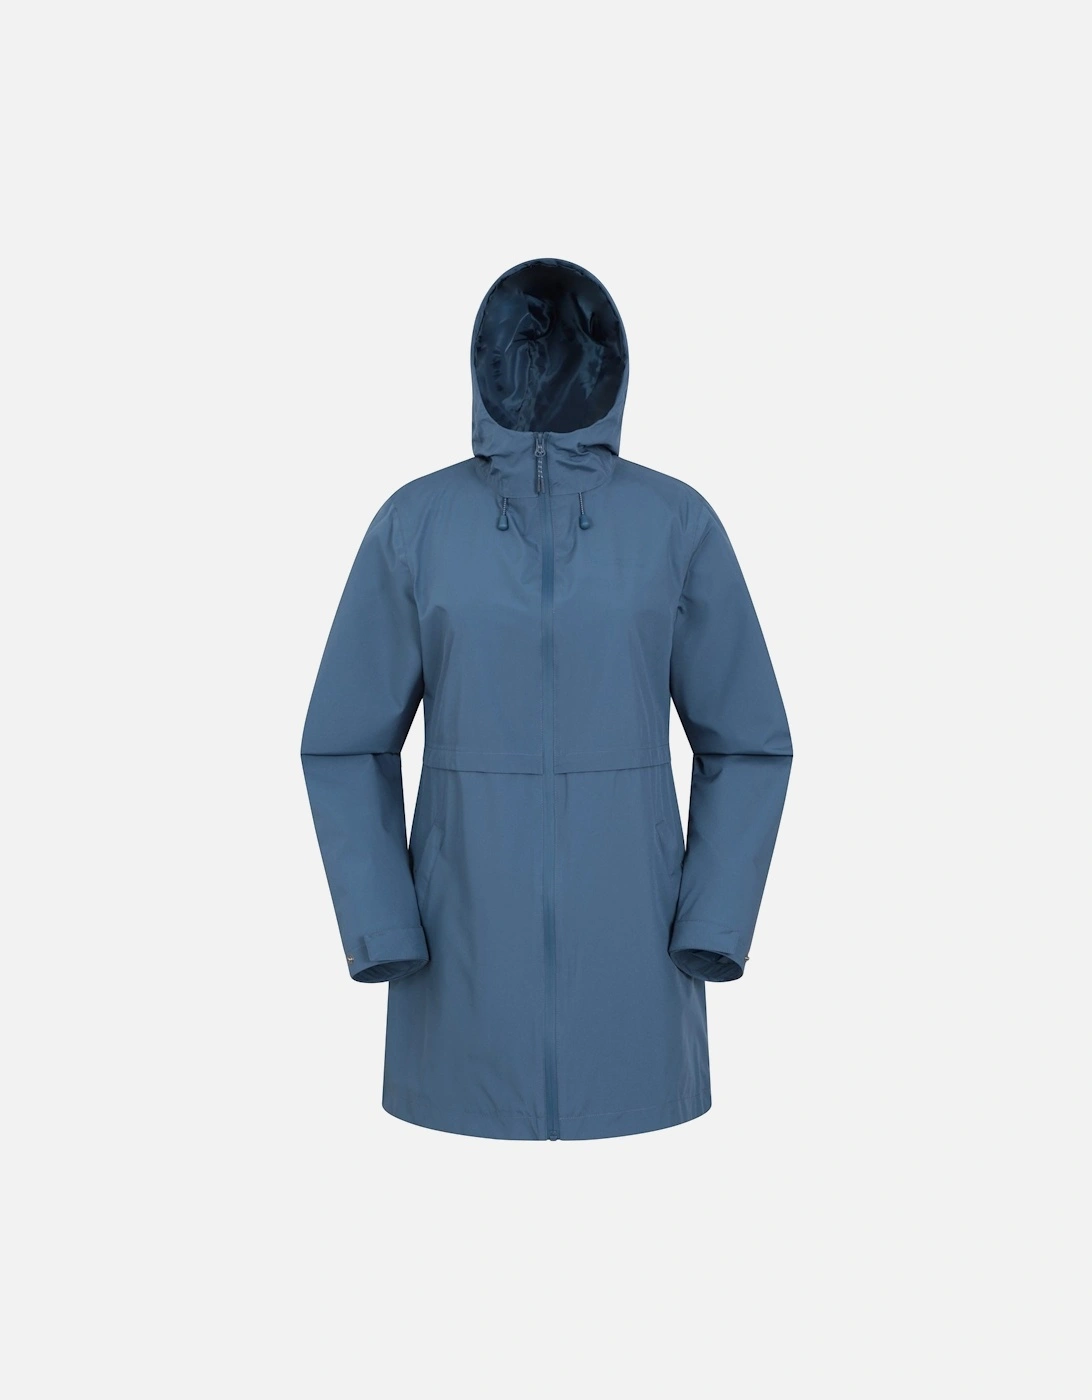 Womens/Ladies Hilltop II Waterproof Jacket, 6 of 5